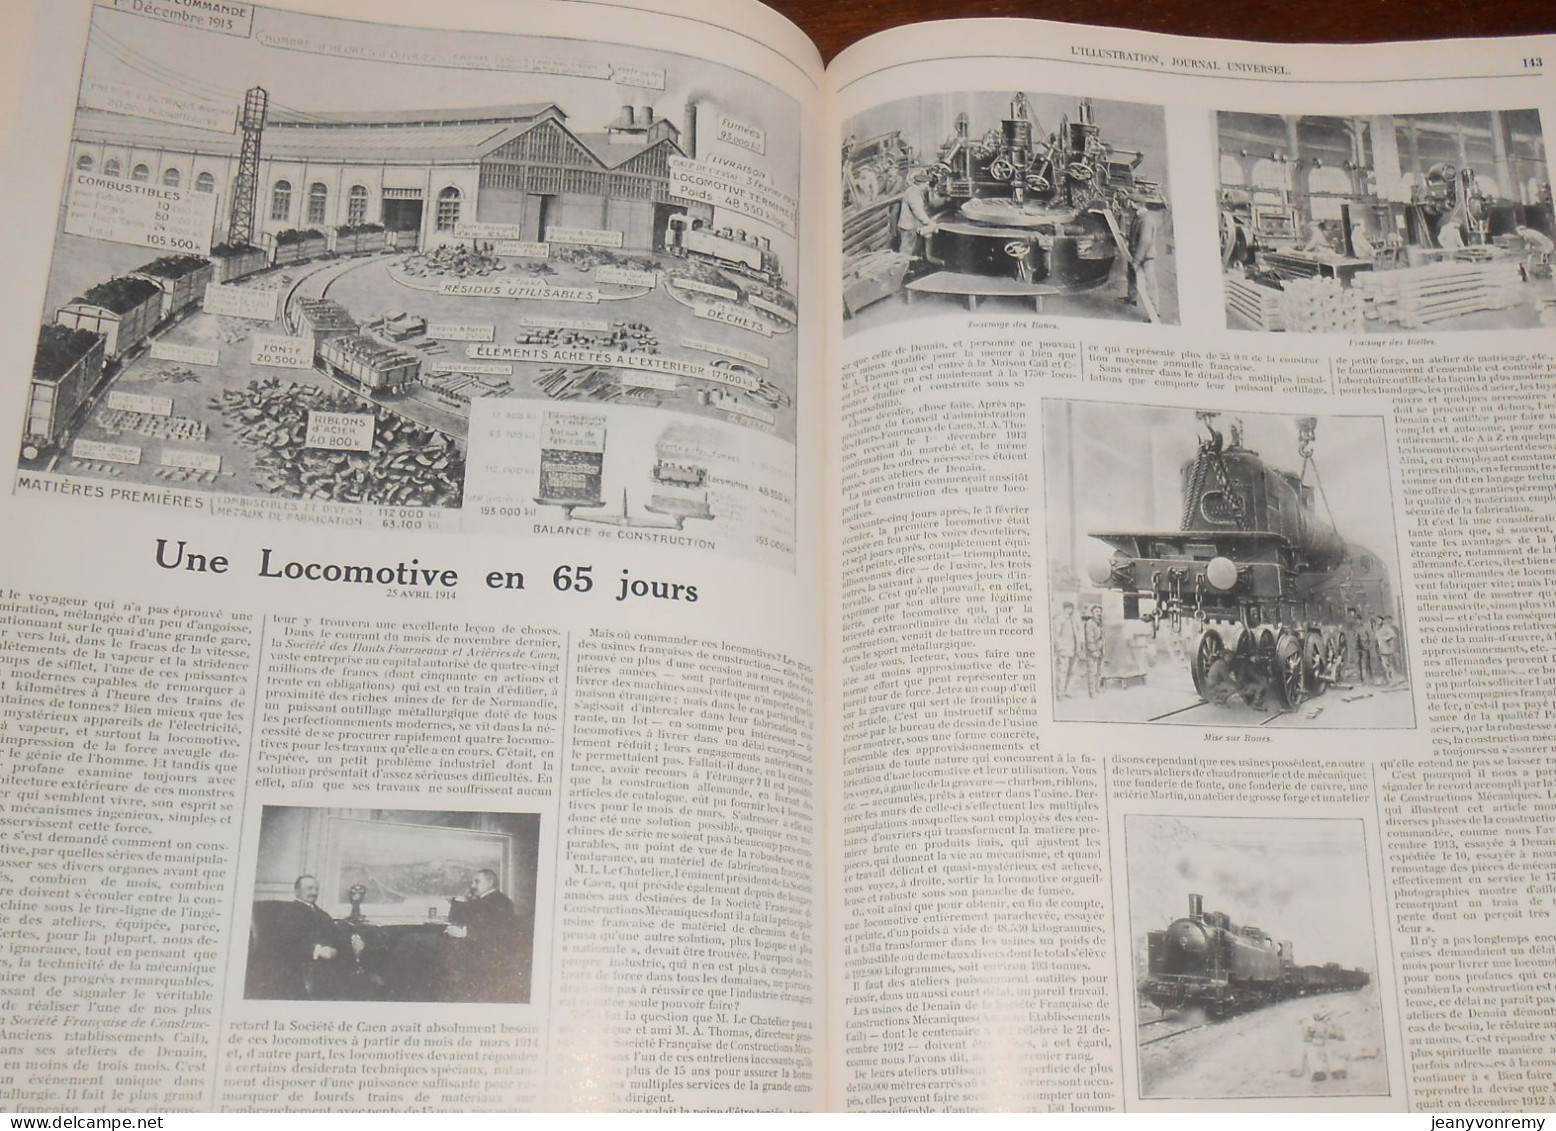 Les Chemins de Fer. Les grands dossiers de l'Illustration. Histoire d'un siècle. 1843-1944. 1987.